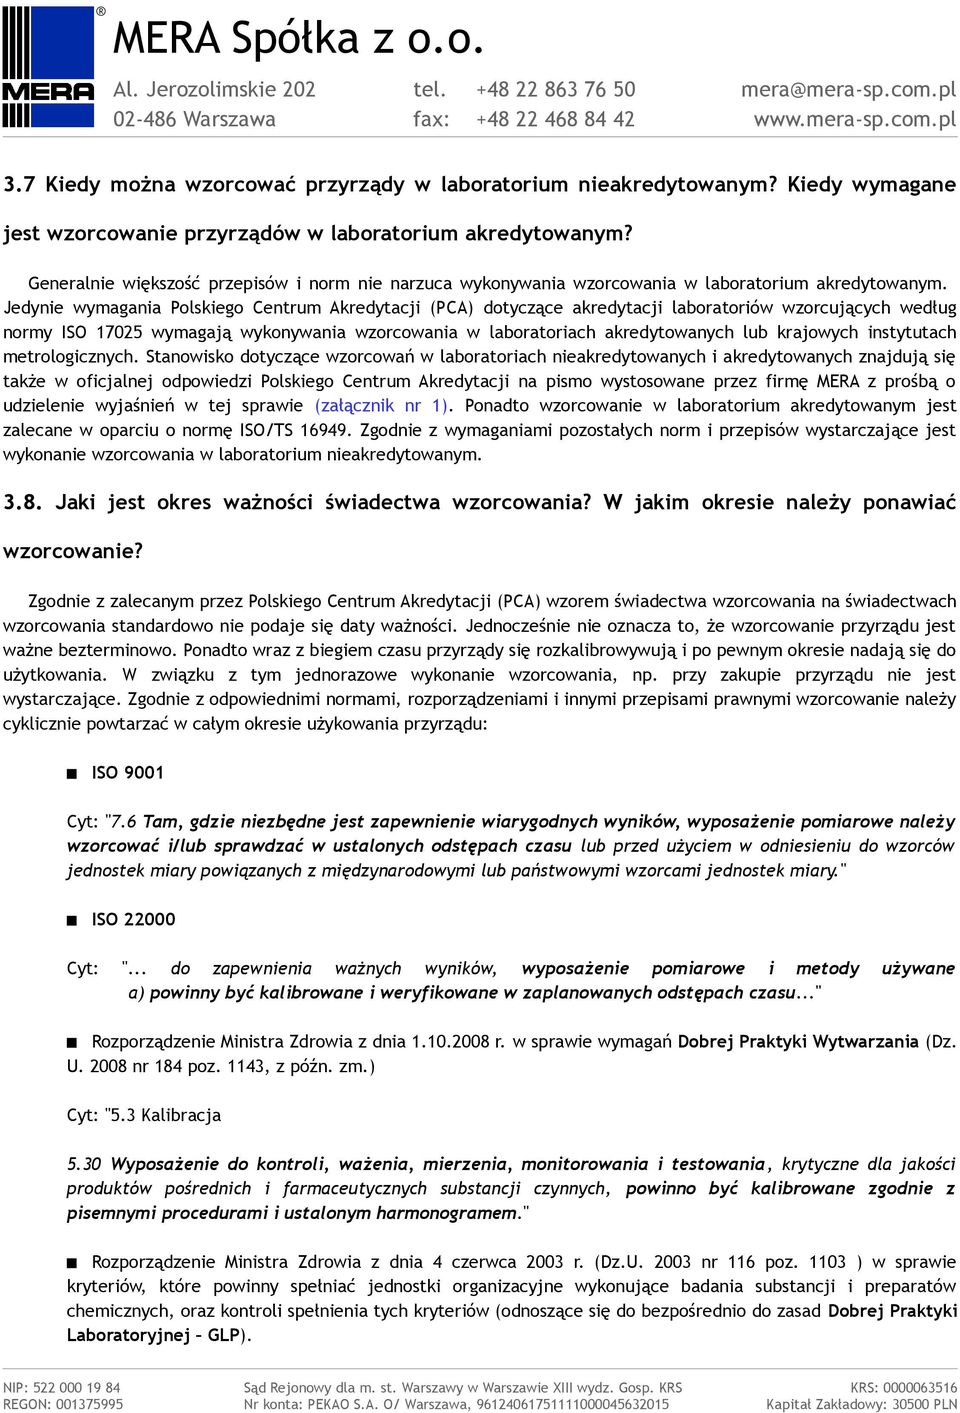 Jedynie wymagania Polskiego Centrum Akredytacji (PCA) dotyczące akredytacji laboratoriów wzorcujących według normy ISO 17025 wymagają wykonywania wzorcowania w laboratoriach akredytowanych lub